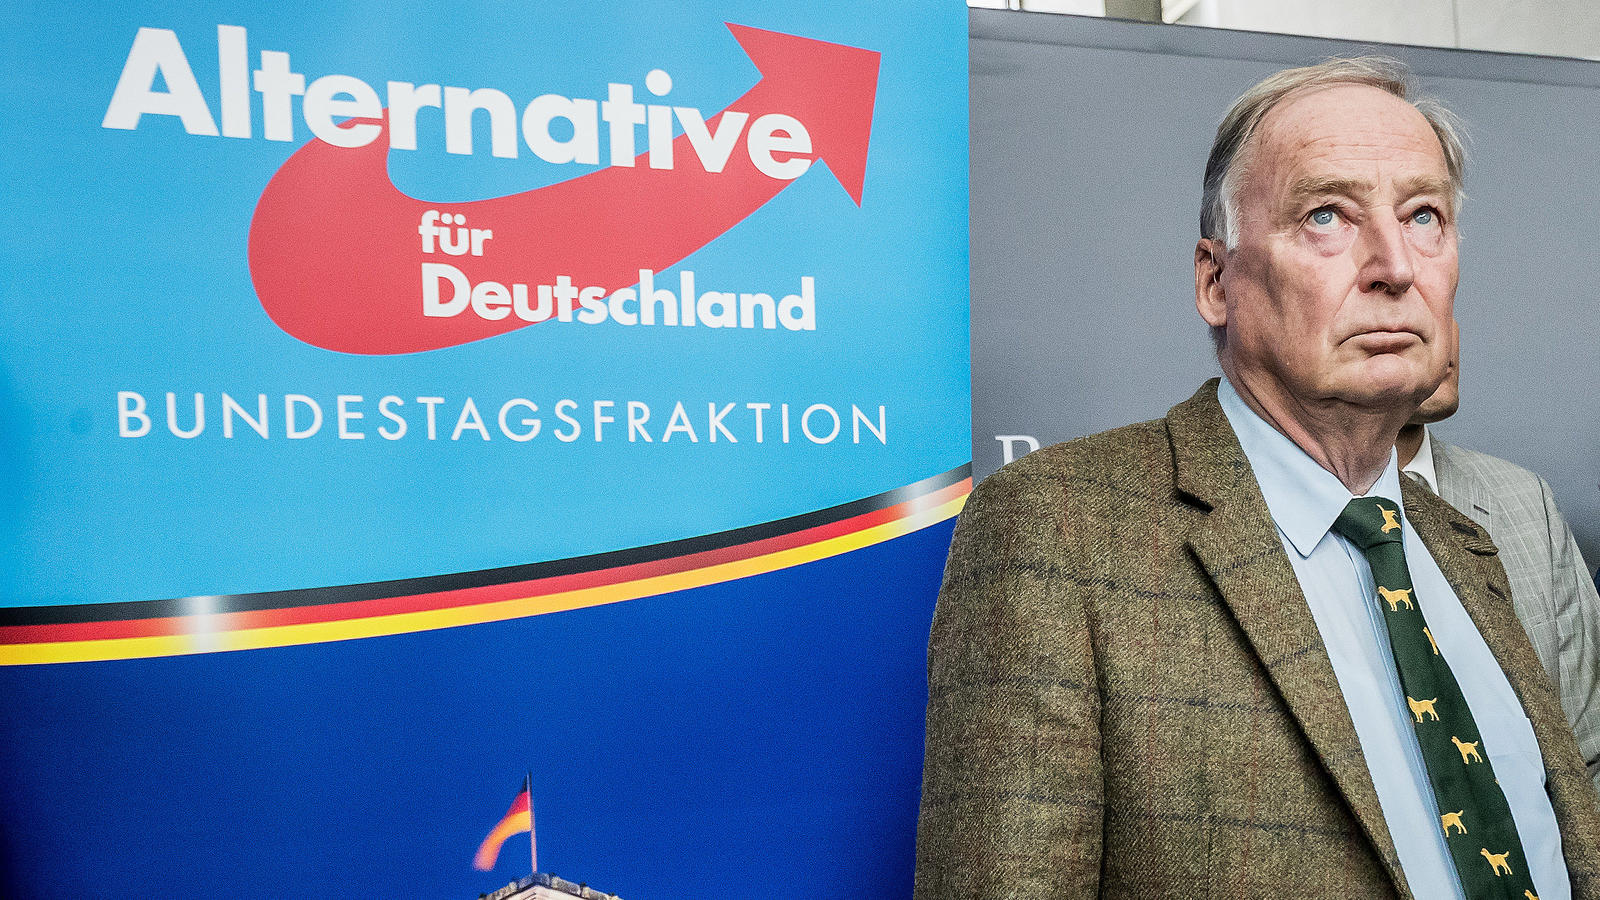 Erstmals wird die AfD im Bundestag vertreten sein. Und das als drittstärkste Partei.